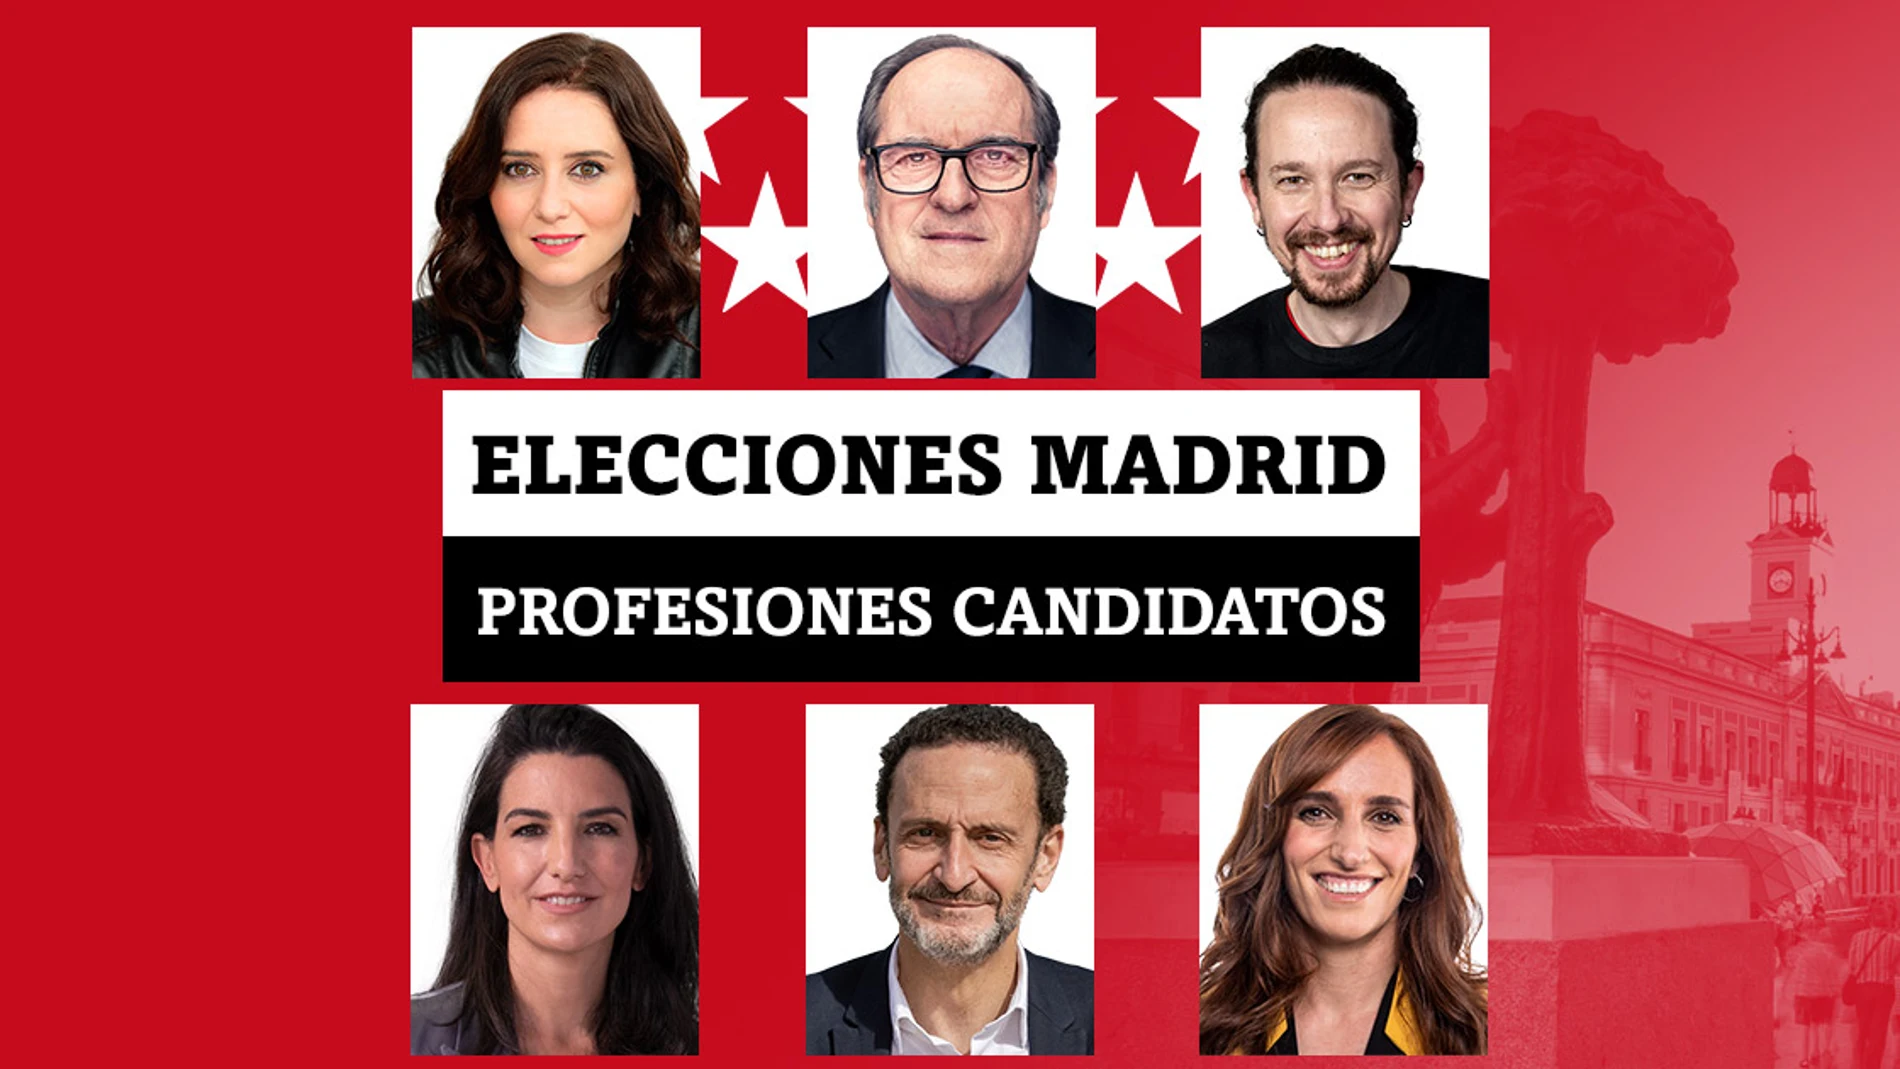 Isabel Díaz Ayuso, Pablo Iglesias, Rocio Monasterio, Gabilondo, García, Bal... Las profesiones de los candidatos en las elecciones de Madrid